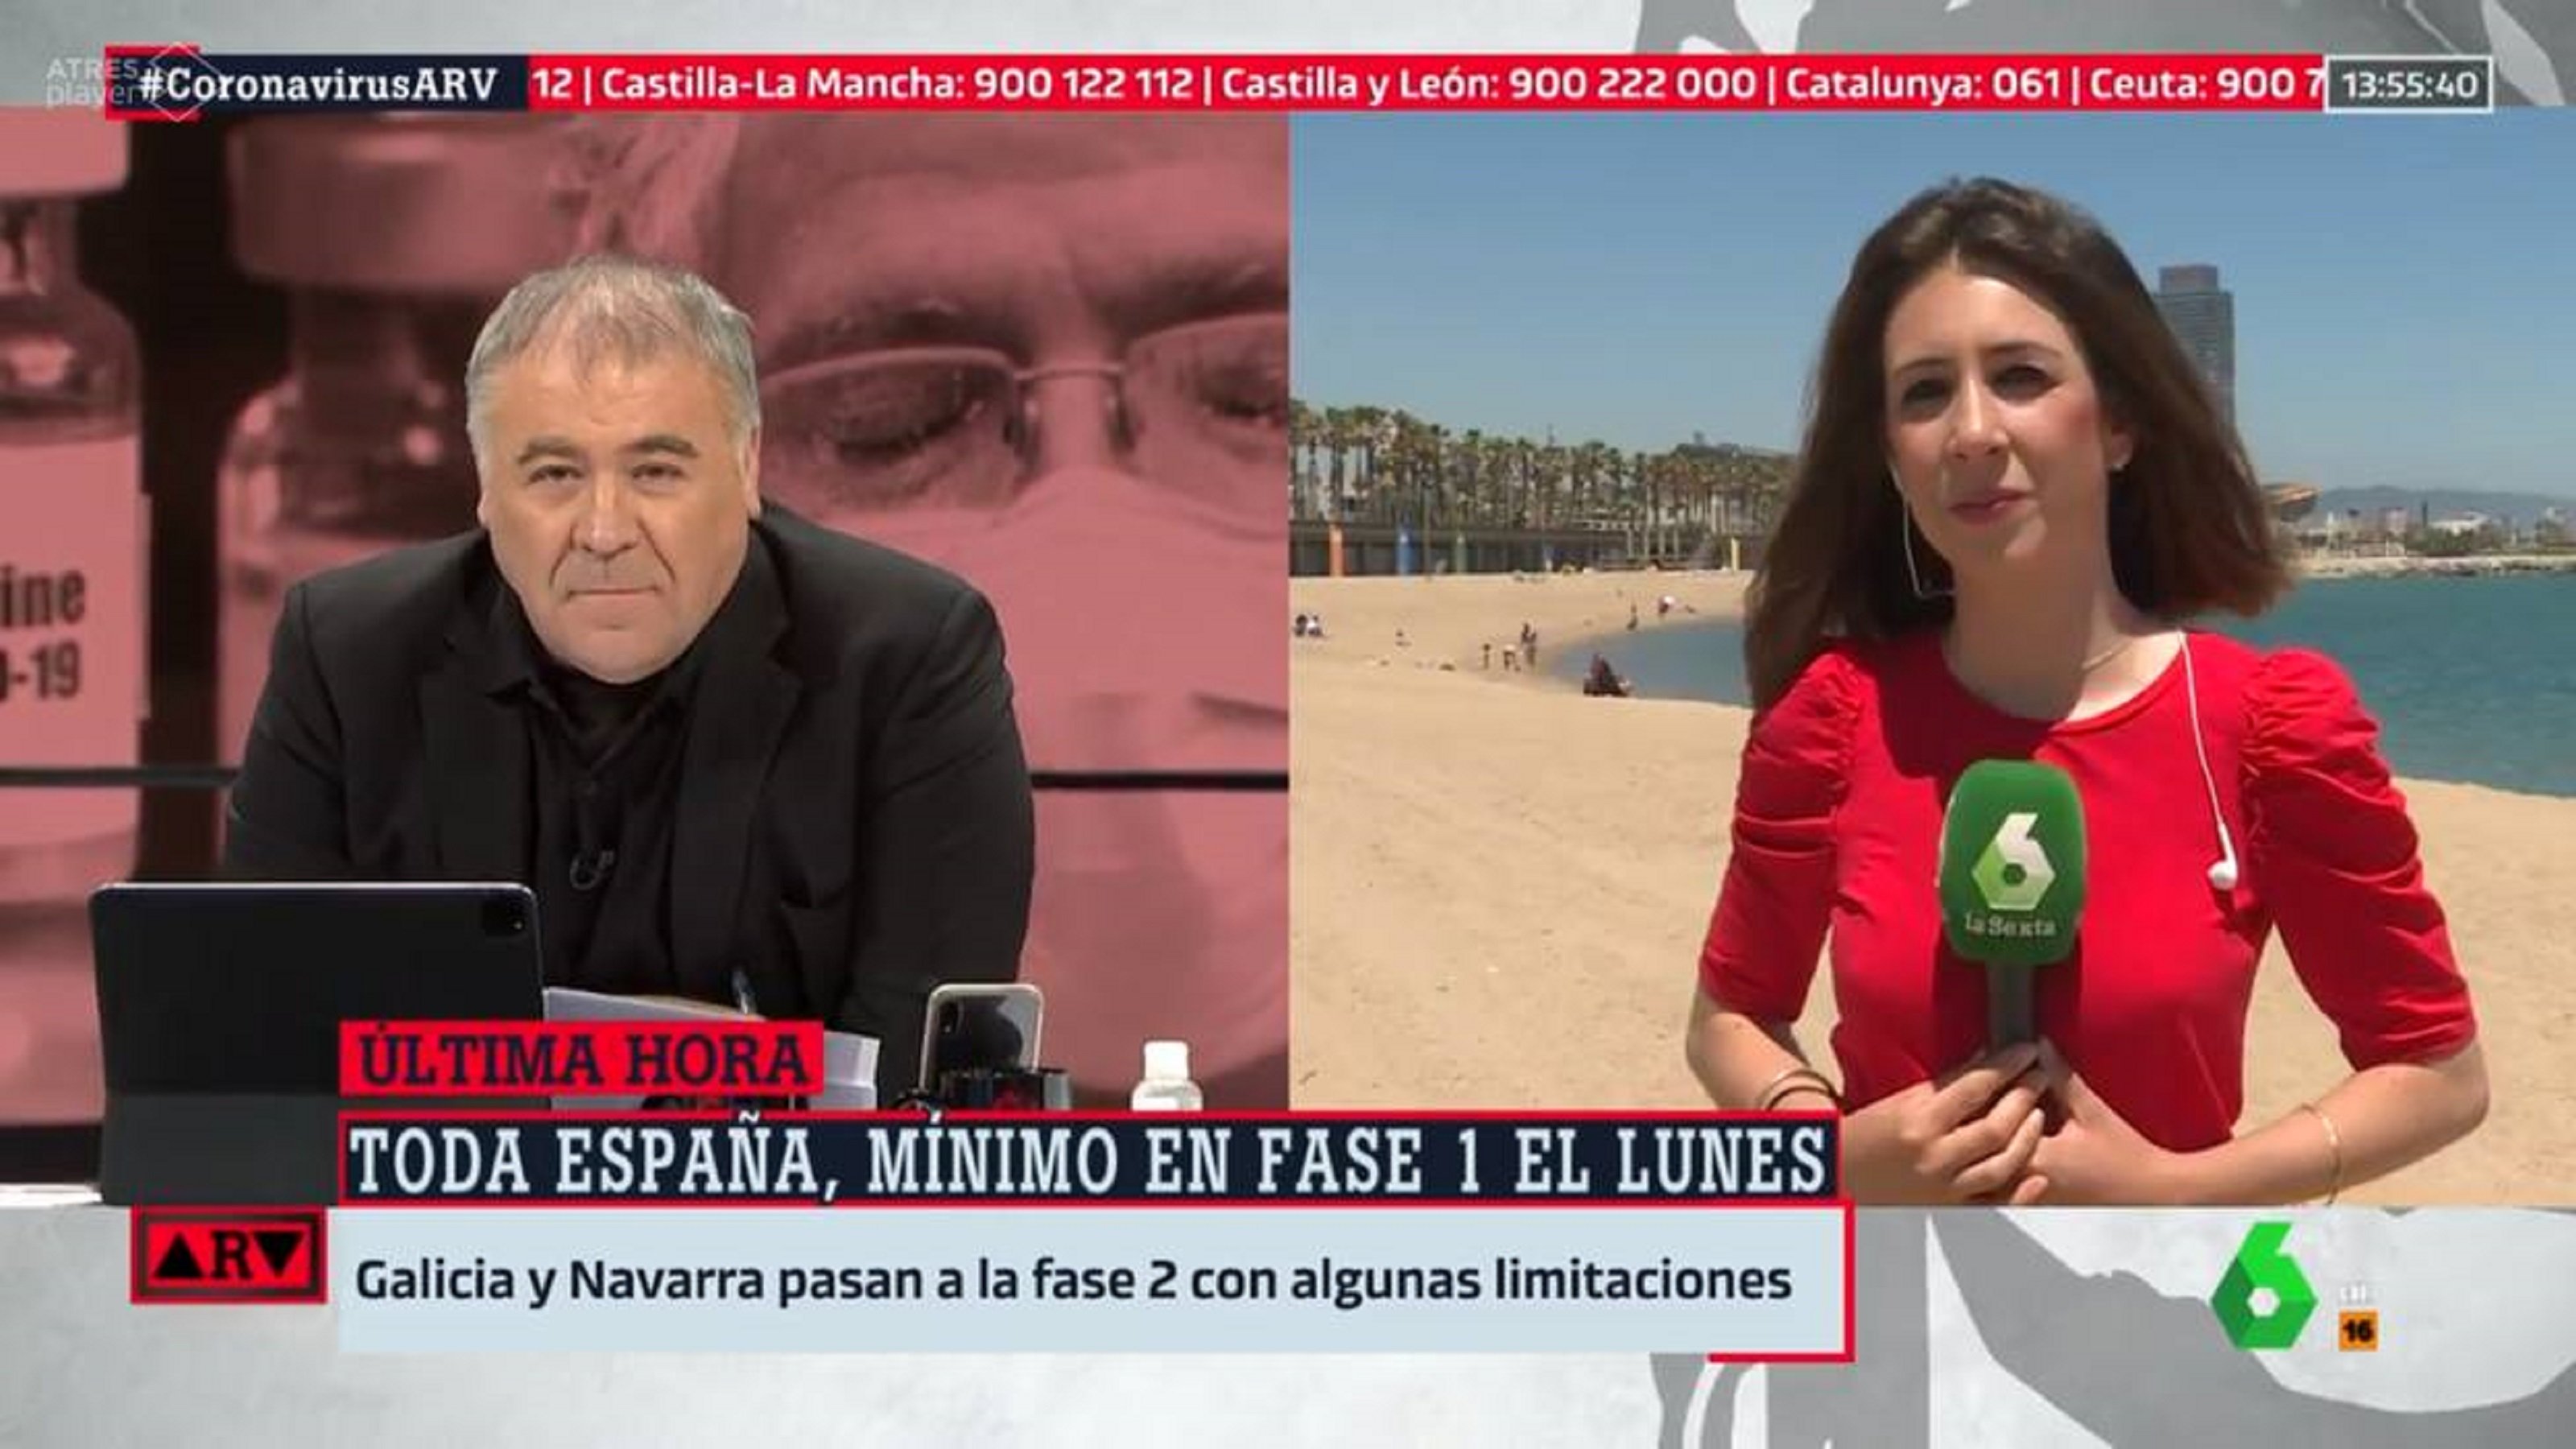 Vergonyós directe a Barcelona: fake news de Ferreras i allau de burles